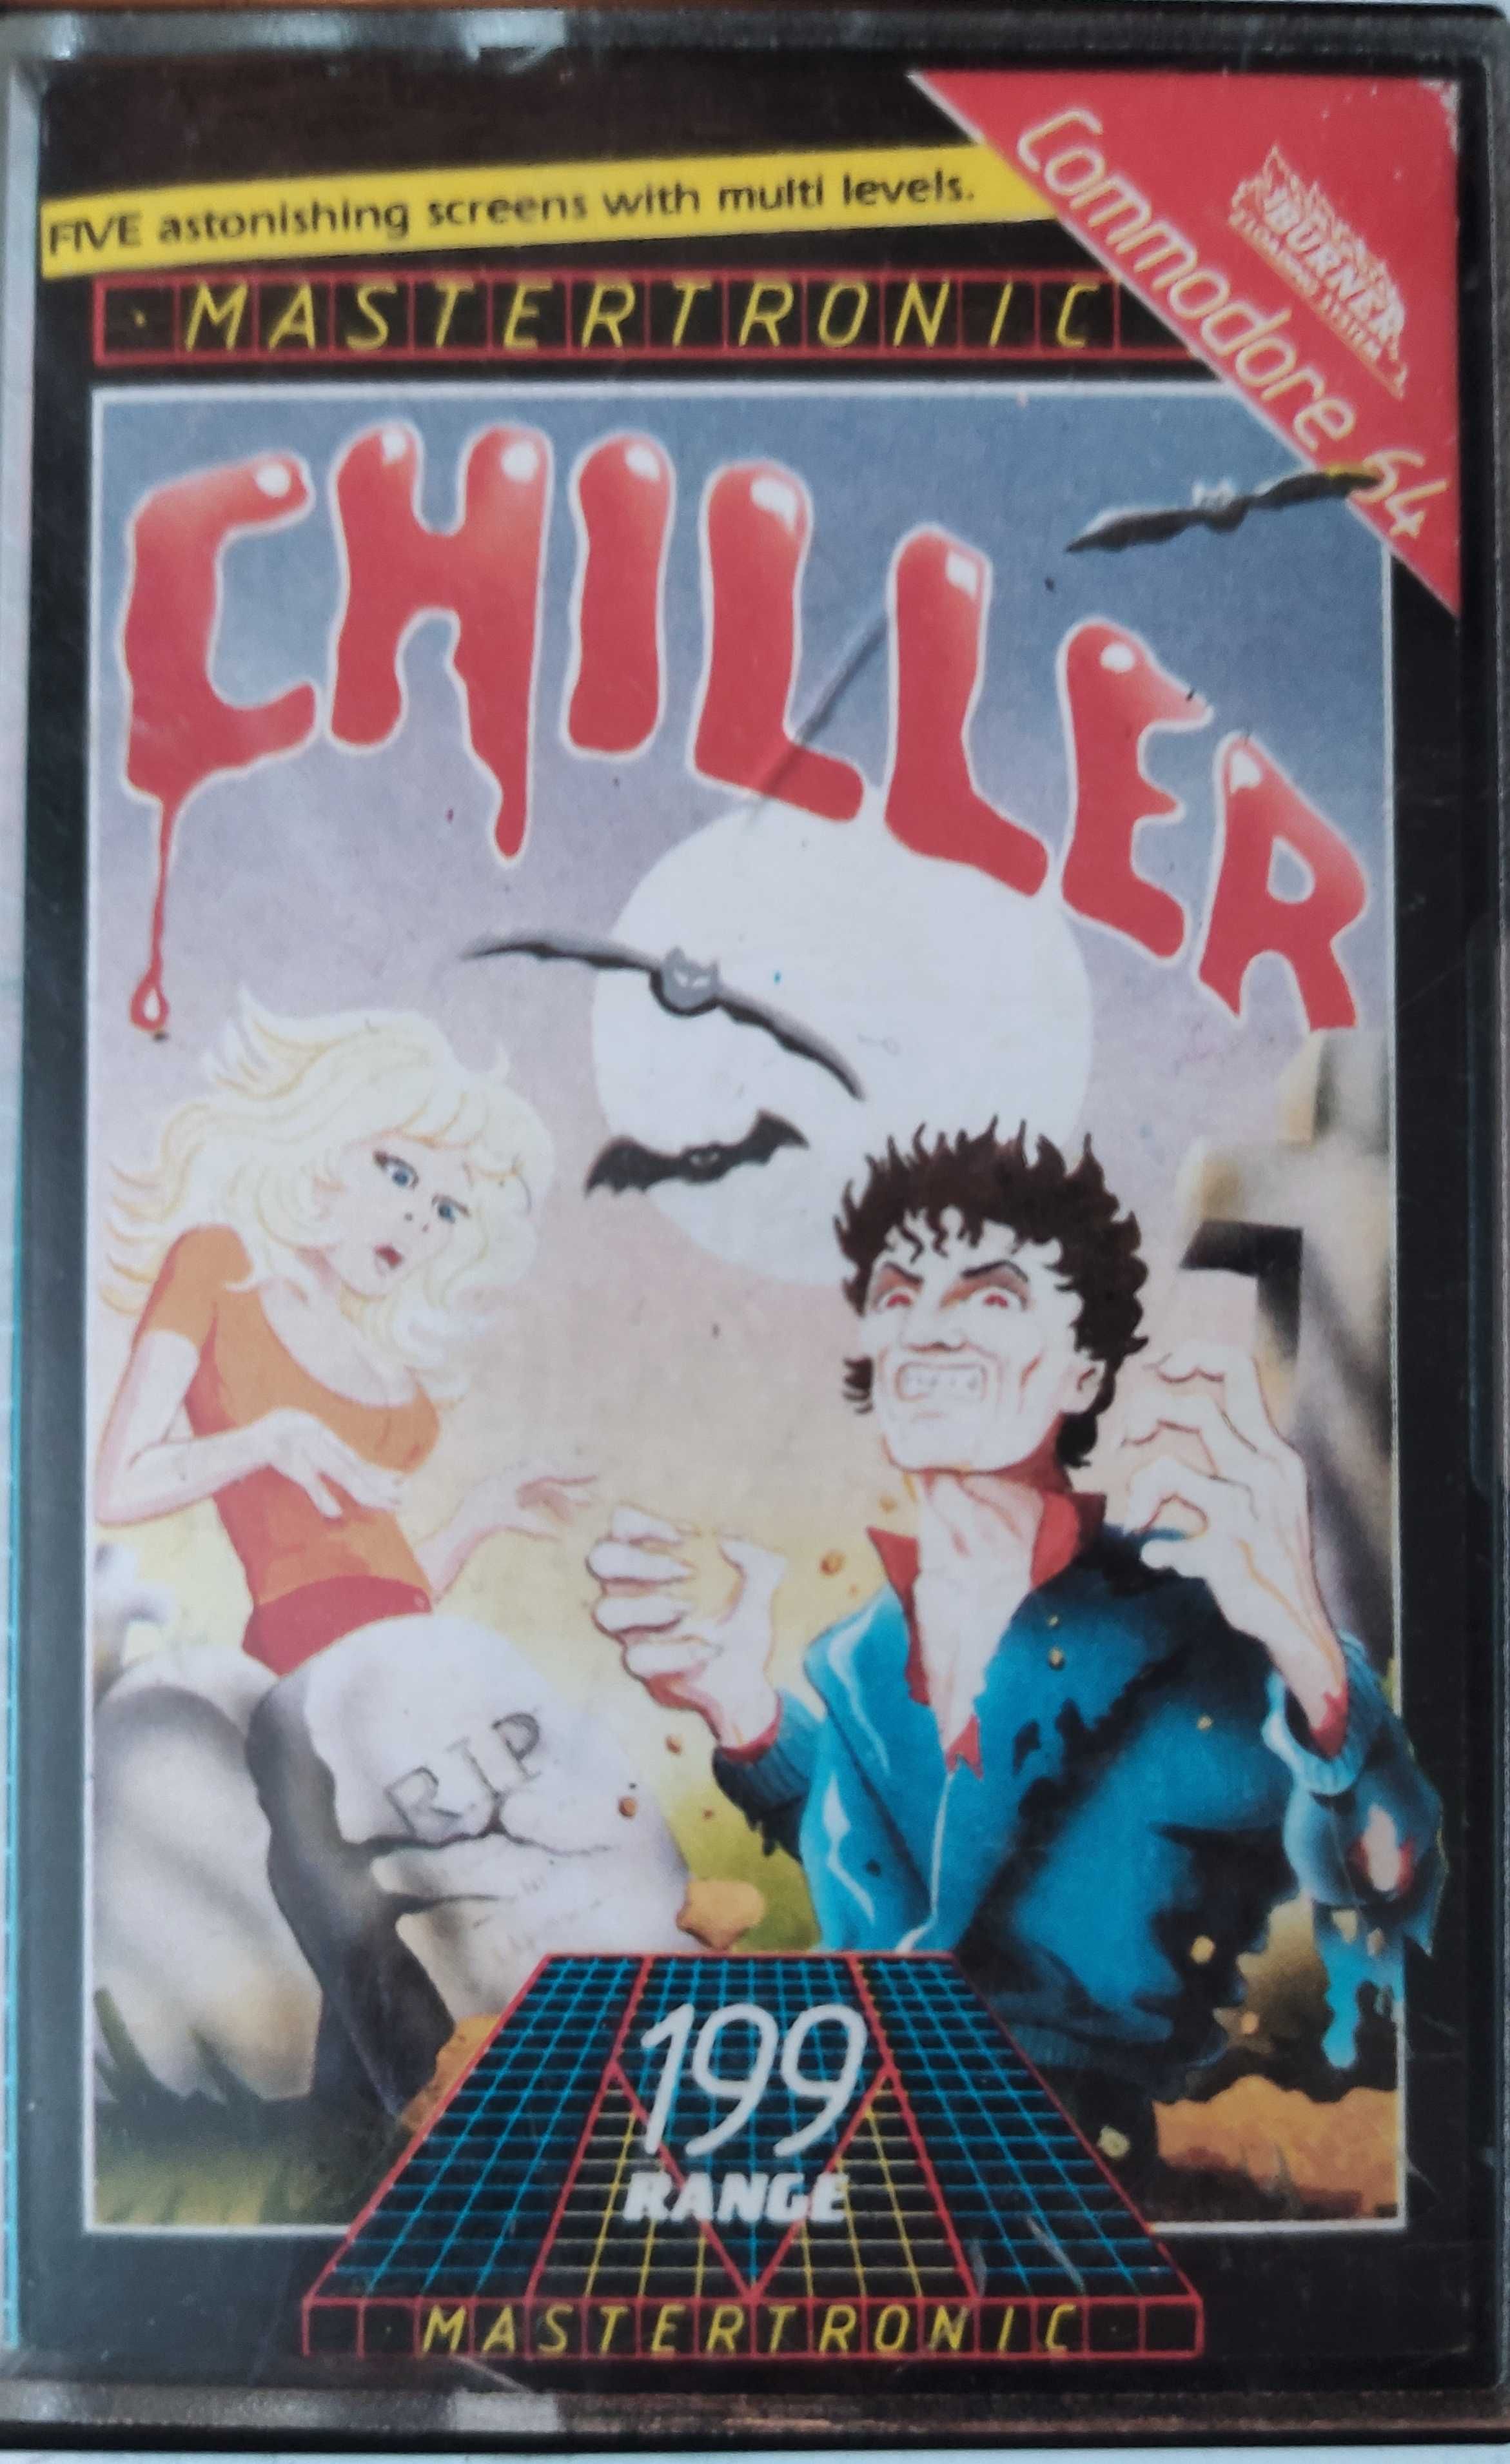 Gra Chiller na Commodore 64 kaseta